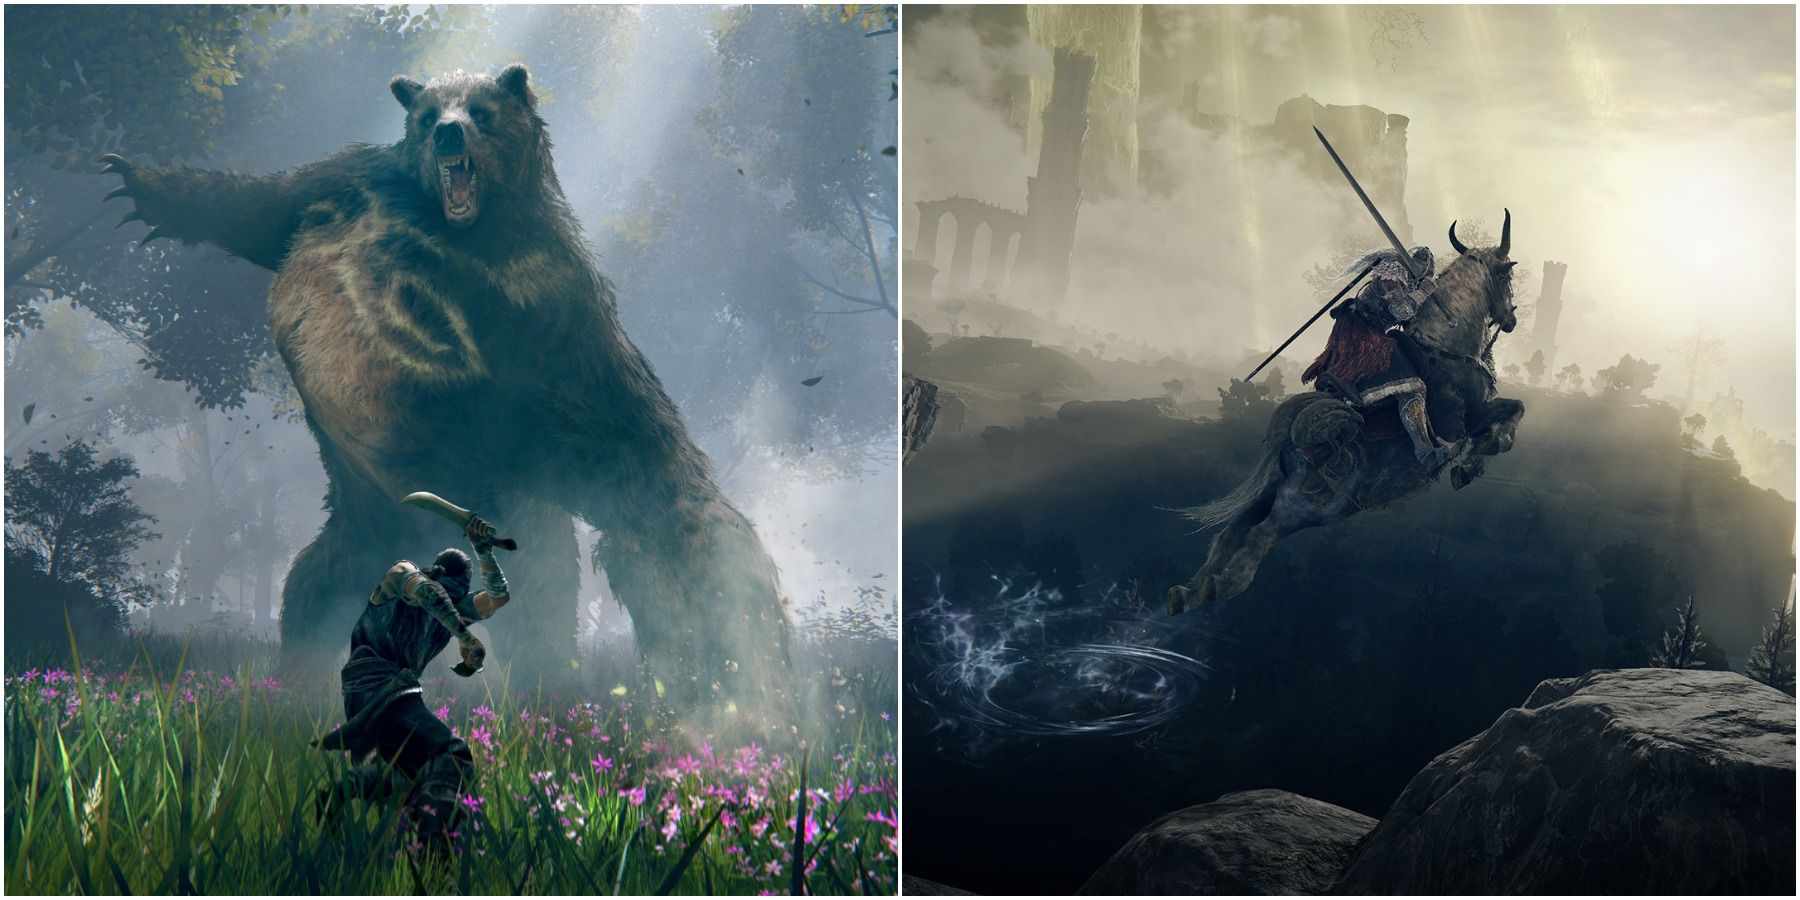 Elden Ring (слева) Игрок сражается с медведем (справа) Лошадь прыгает в воздухе